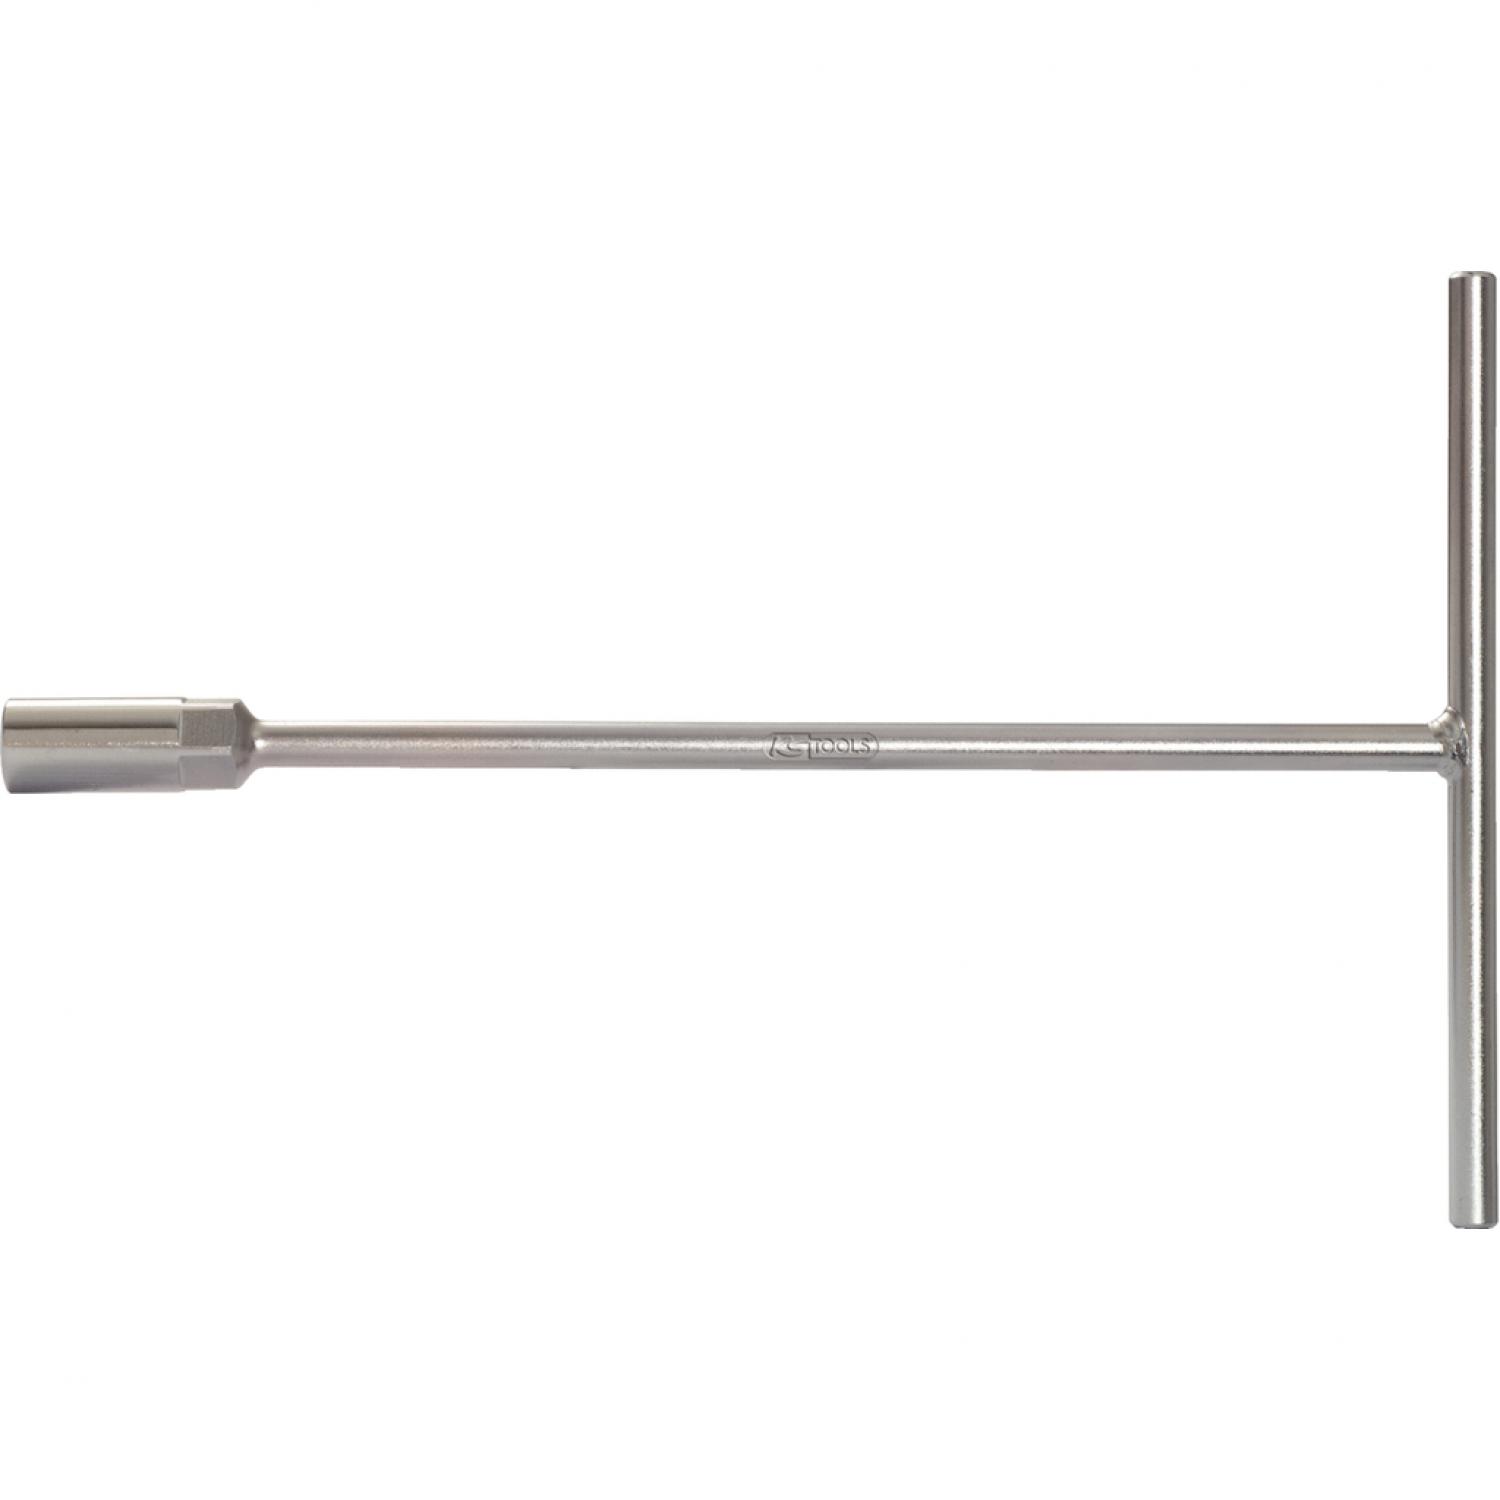 Торцовый ключ с Т-образной рукояткой, 300 мм, 14 мм